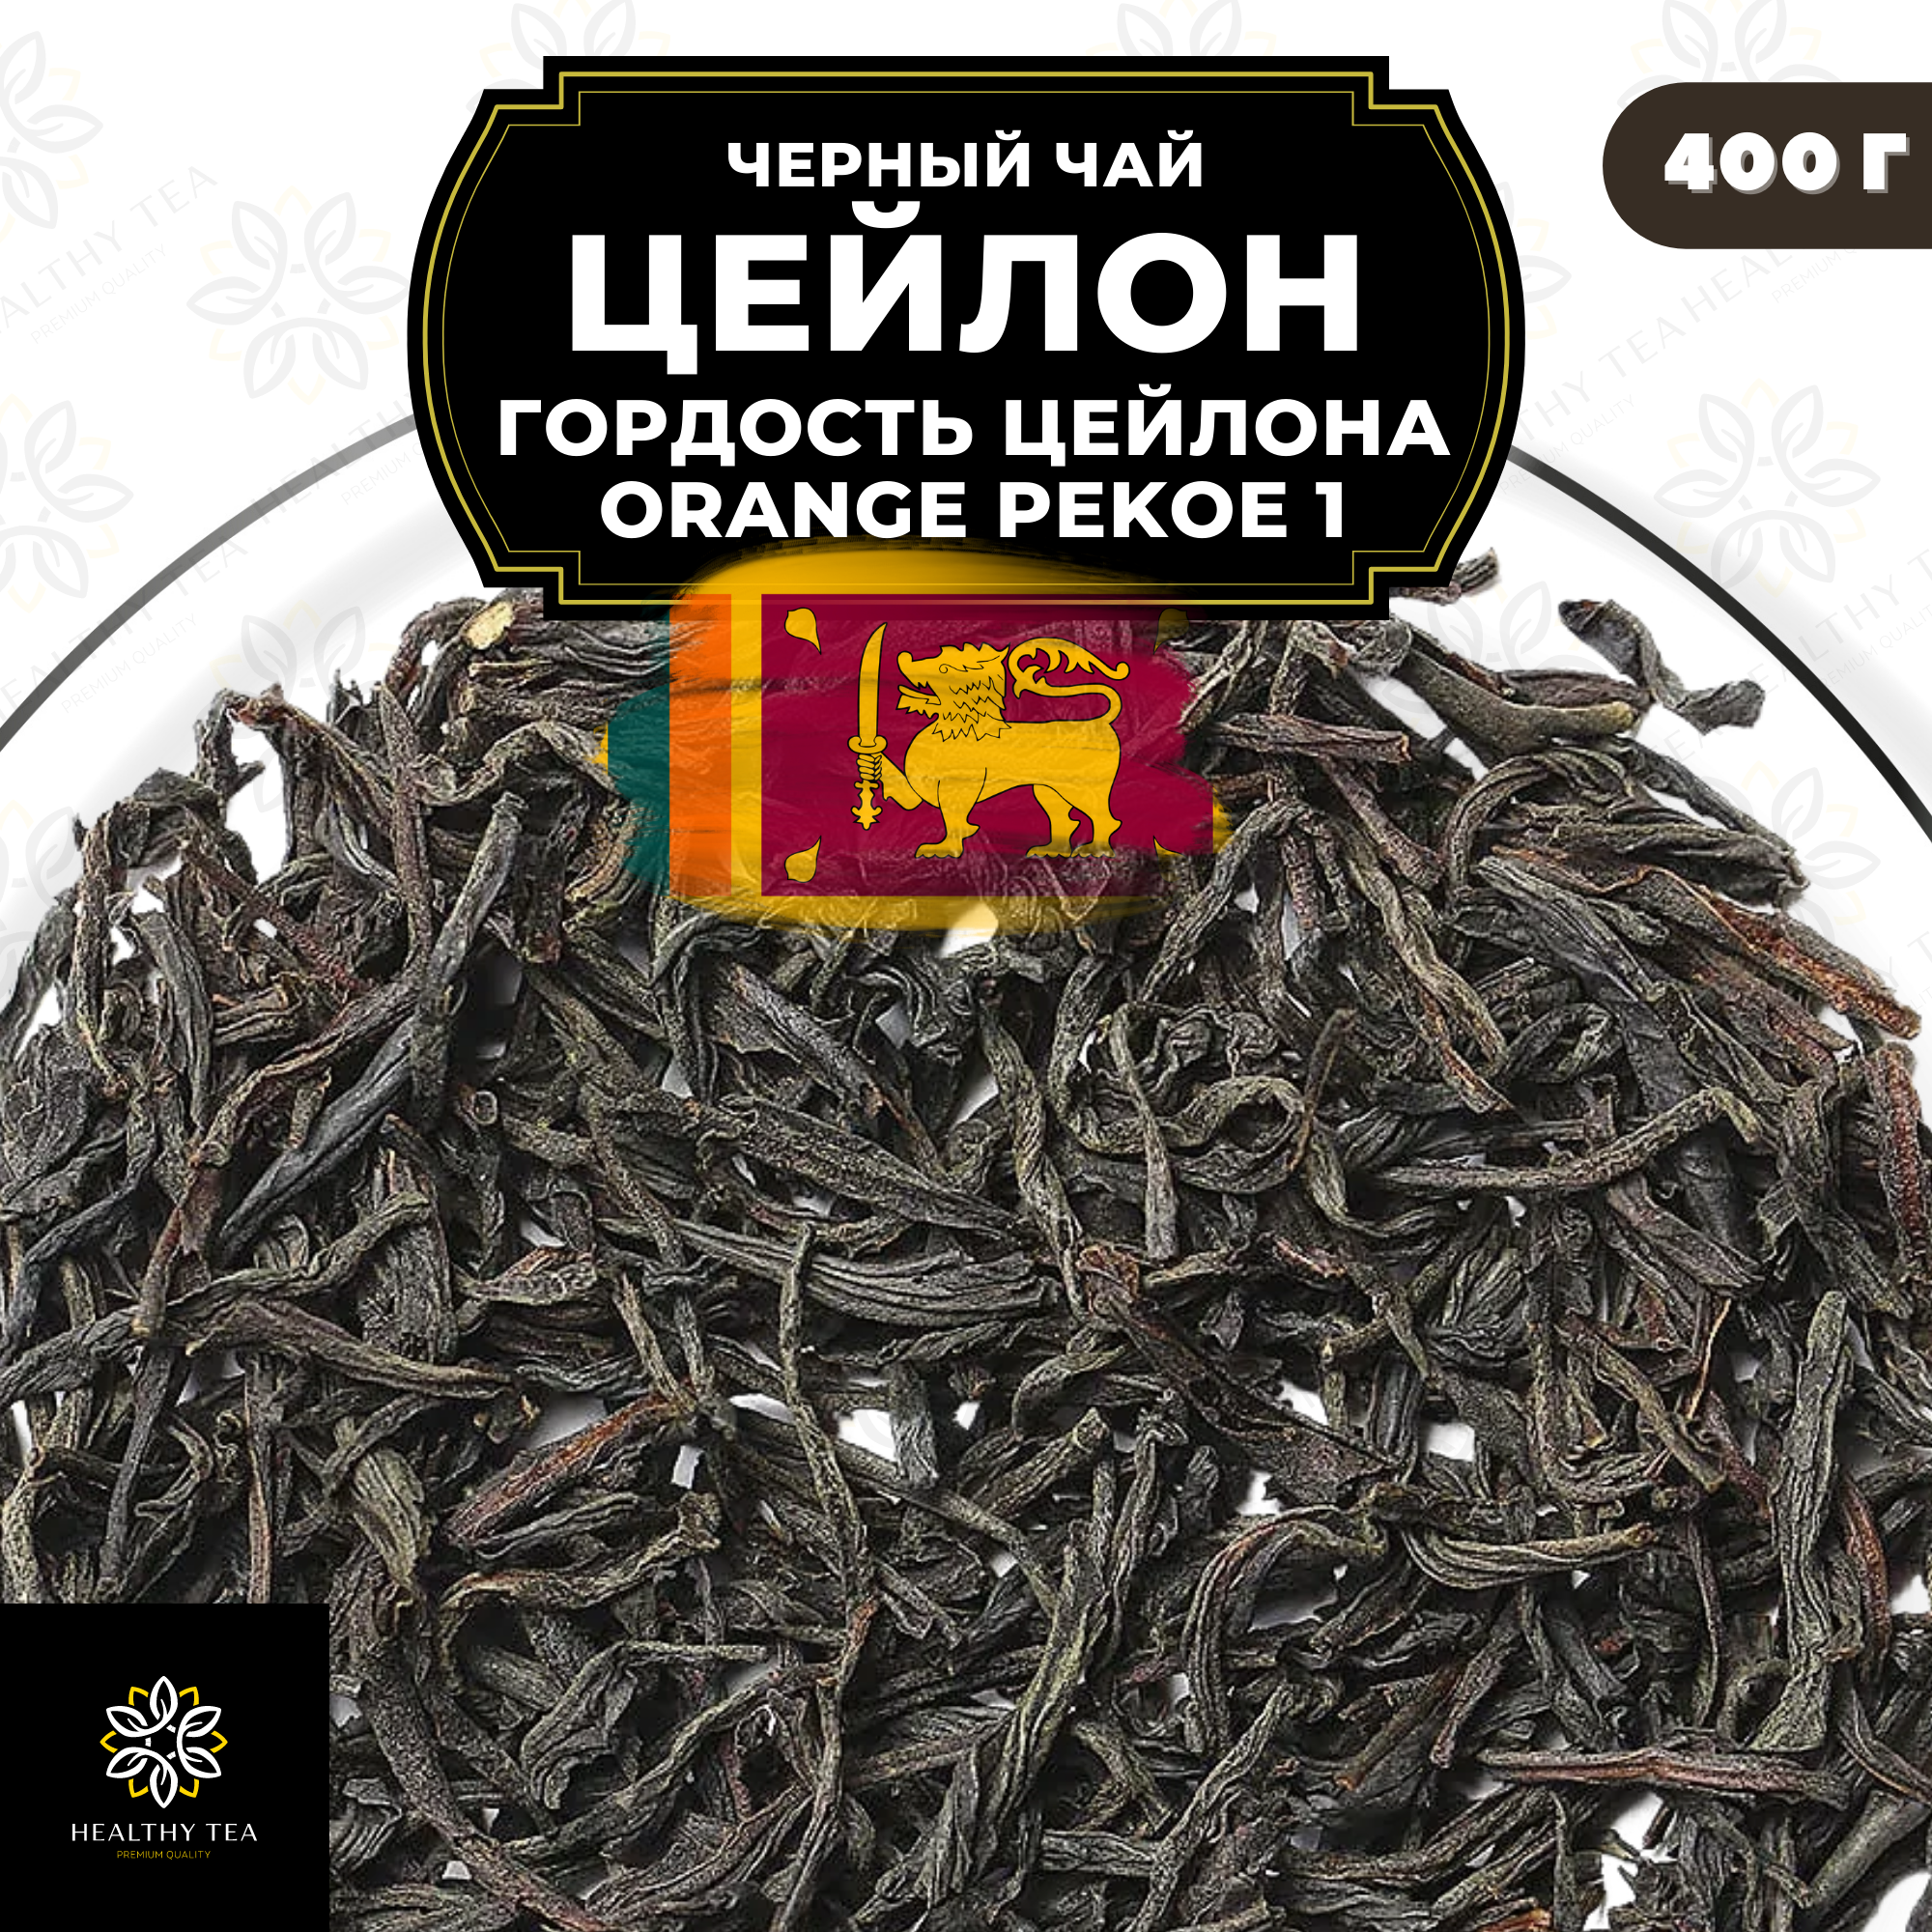 Черный листовой чай Цейлон Гордость Цейлона (ОР1) Полезный чай / HEALTHY TEA, 400 гр